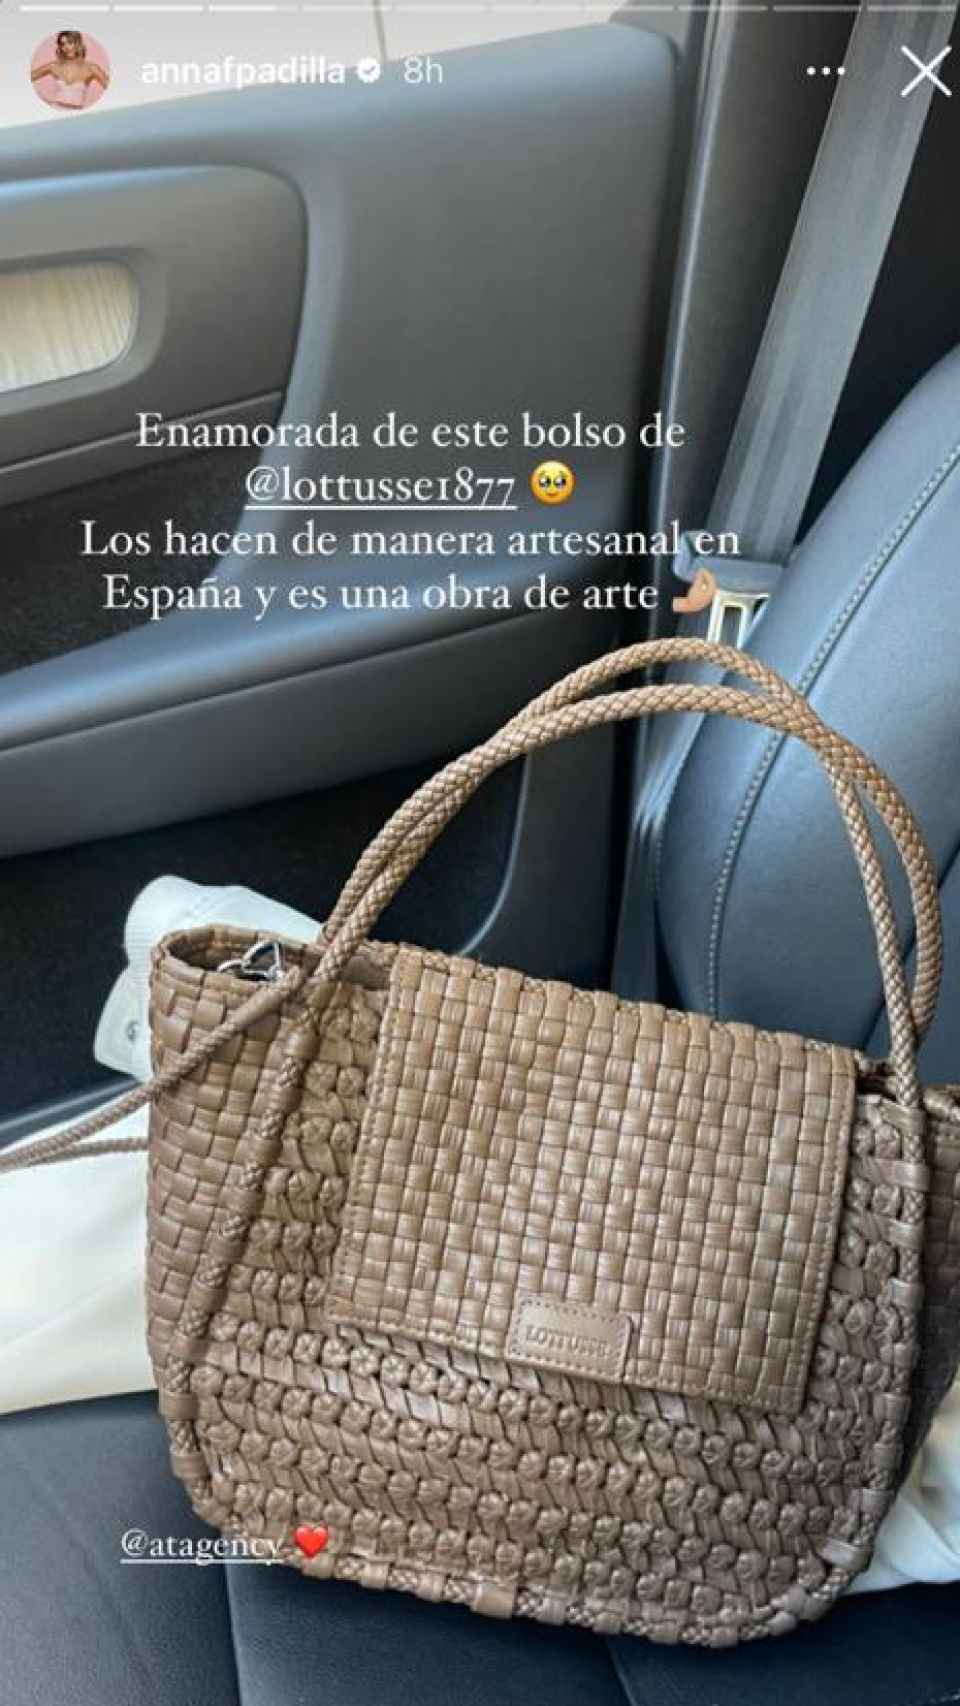 El nuevo bolso de Lottusse de Anna Padilla.